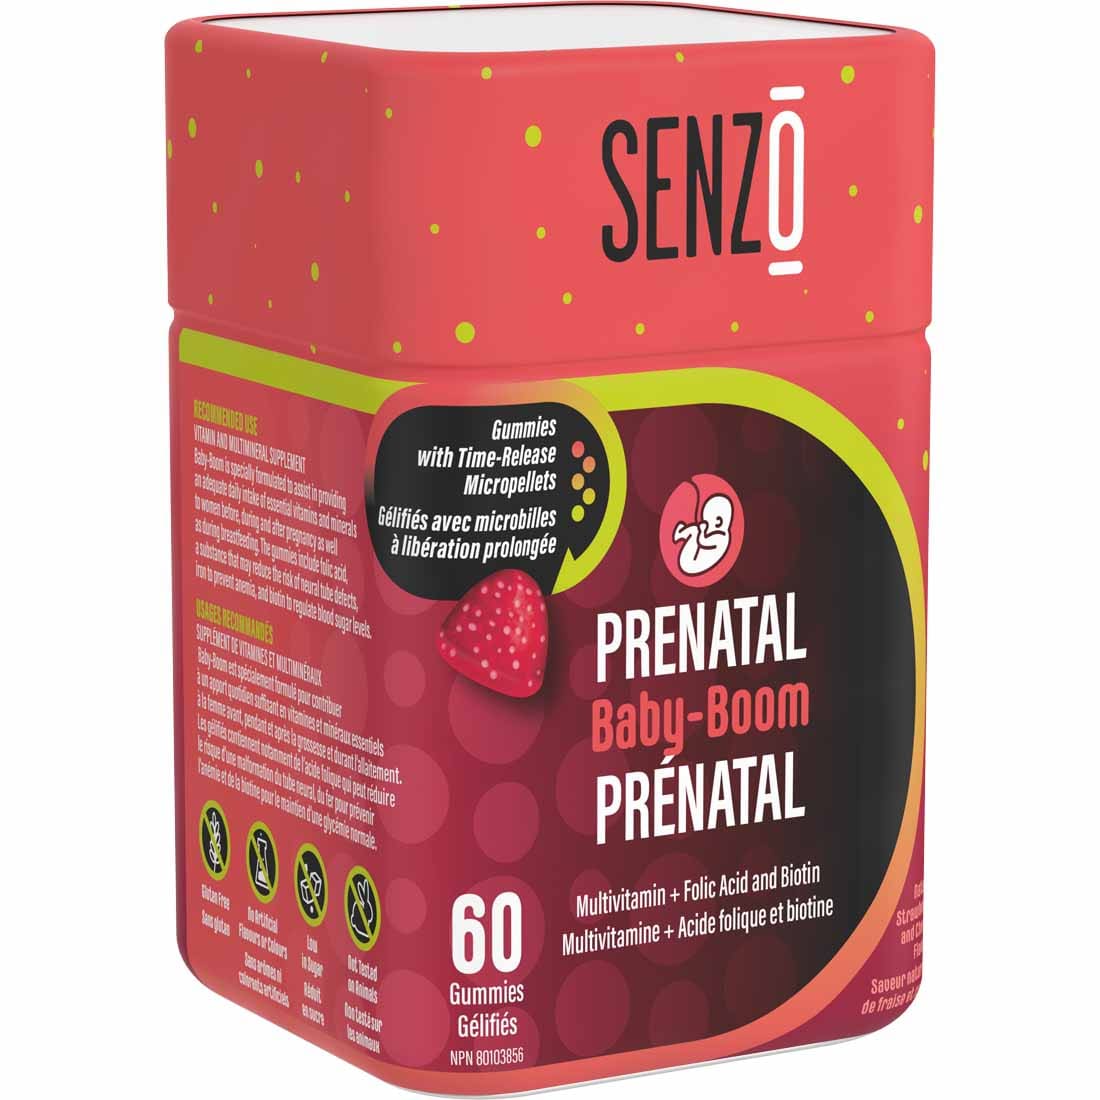 Senzo Baby Boom - Prenatal Gummies, 60 Gummies